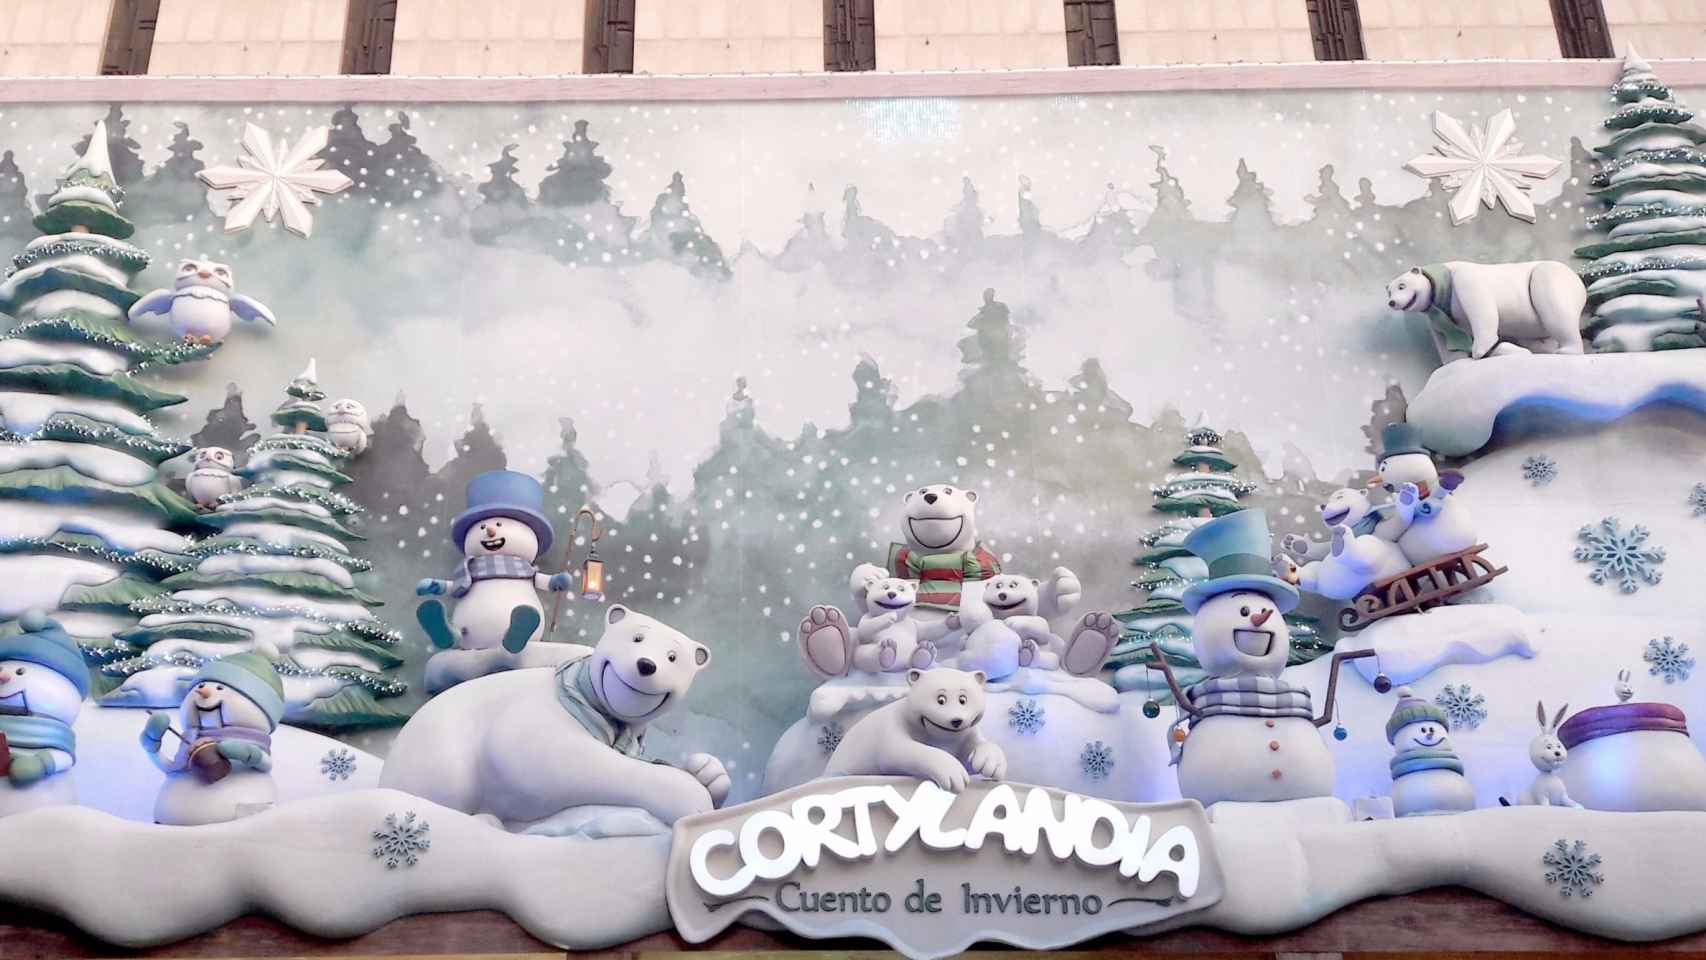 El espectáculo de Cortylandia se ha convertido ya en uno de los planes más tradicionales de la Navidad.